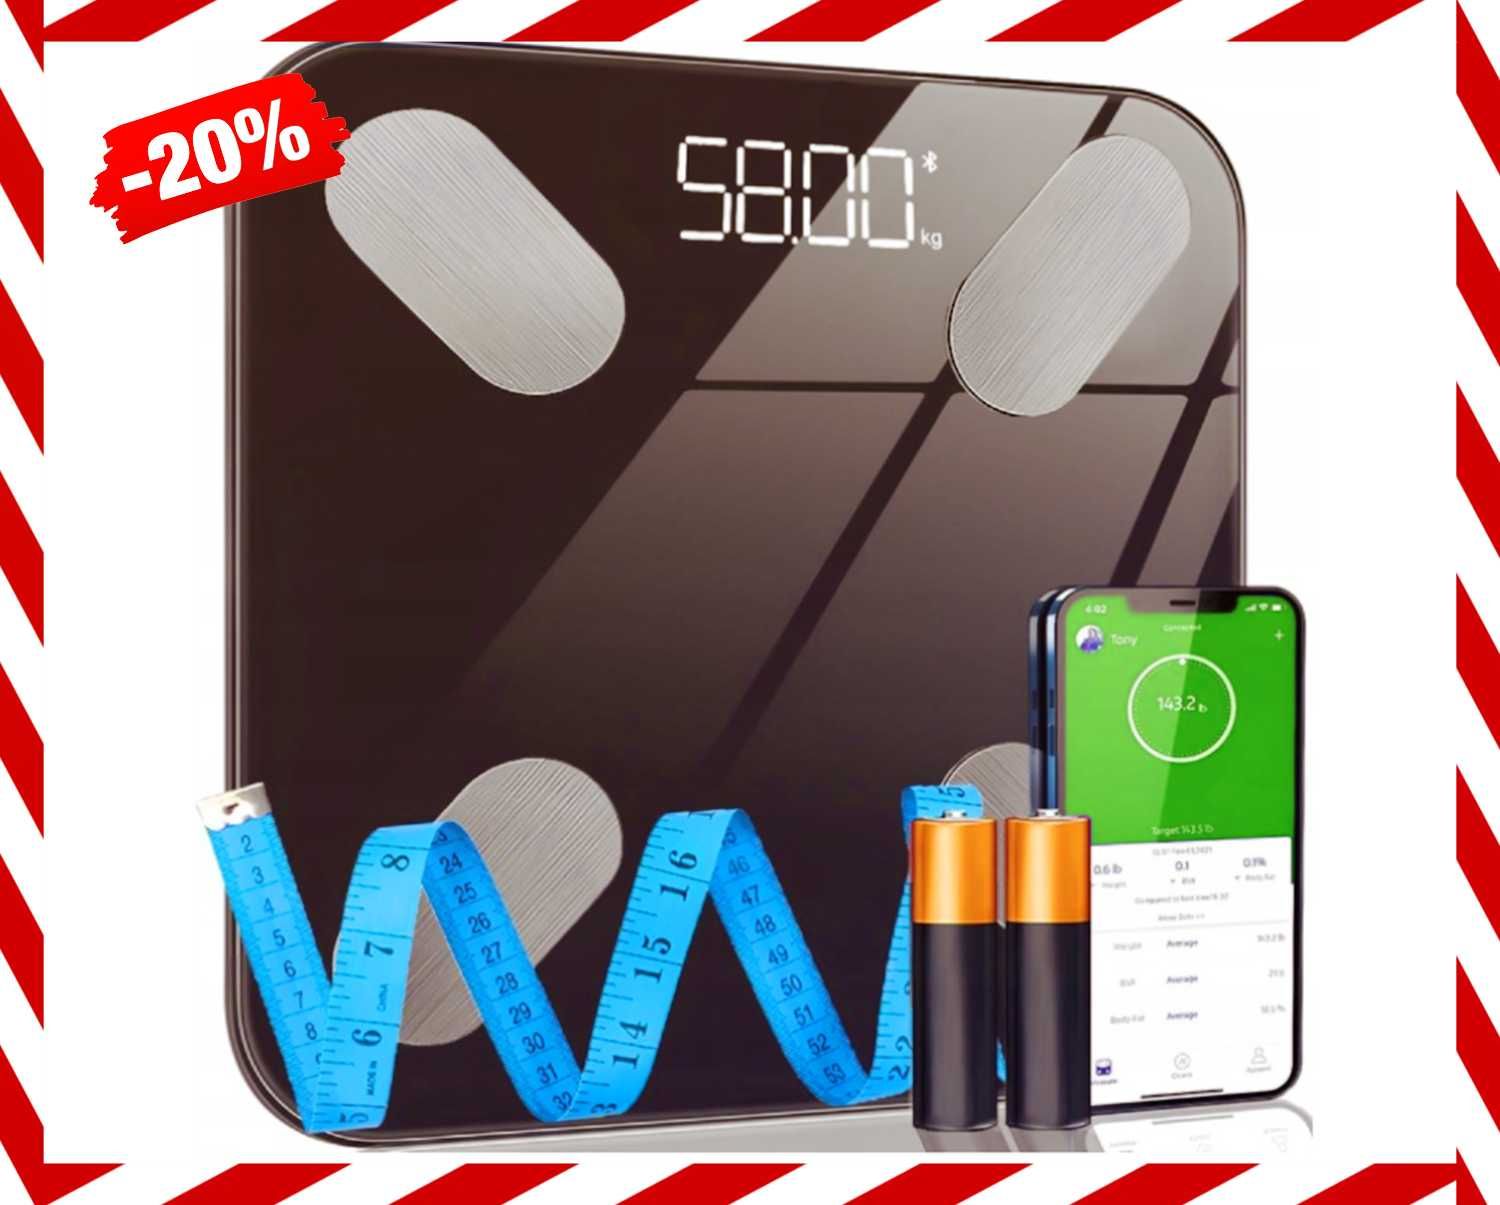 NOWA Waga Łazienkowa Analityczna Smart 25w1 Android *PROMOCJA*